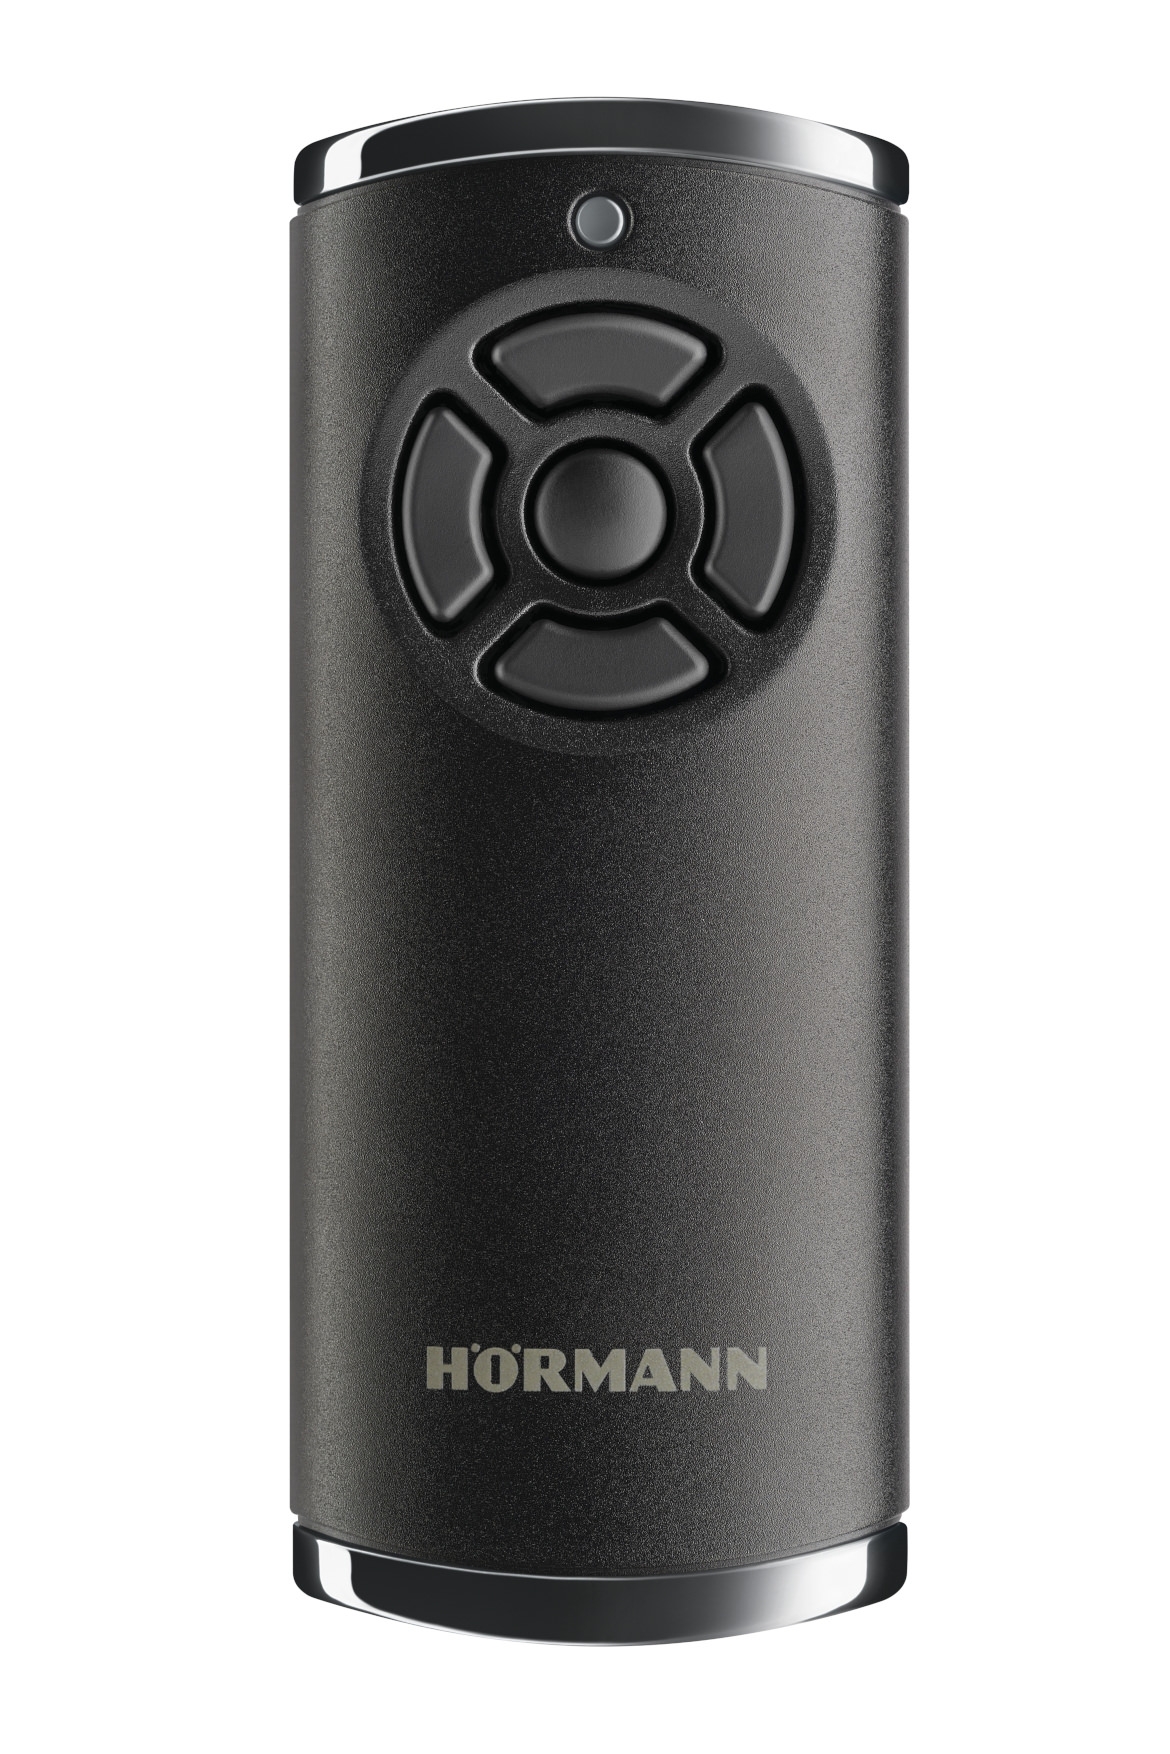 Hörmann Handsender HS 5 BS BiSecur HS5BS 868Mhz 5-Taster Matt Schwarz 